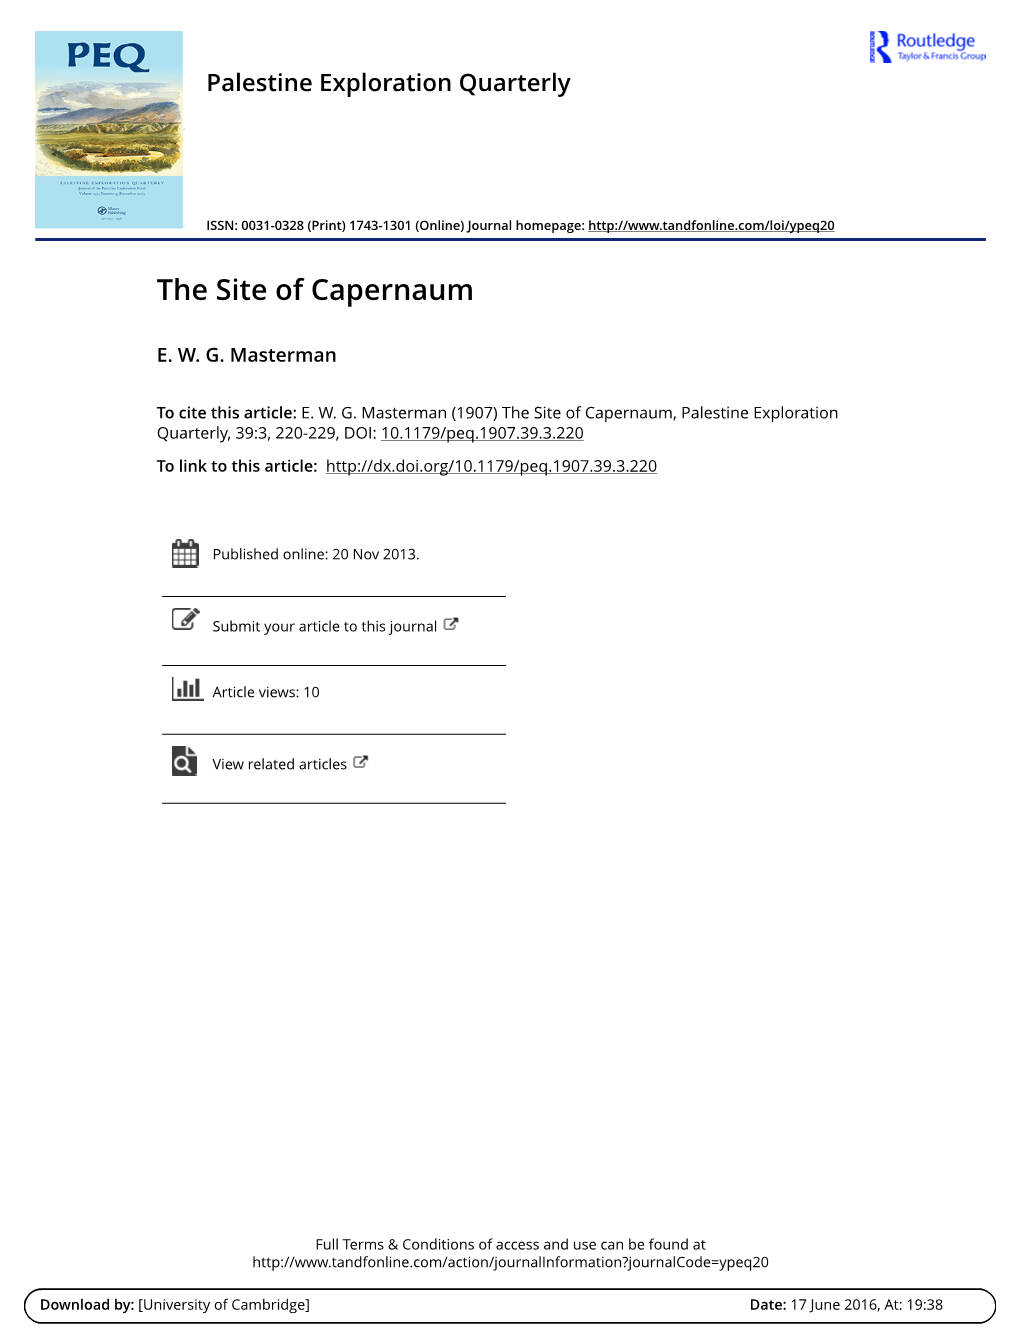 The Site of Capernaum